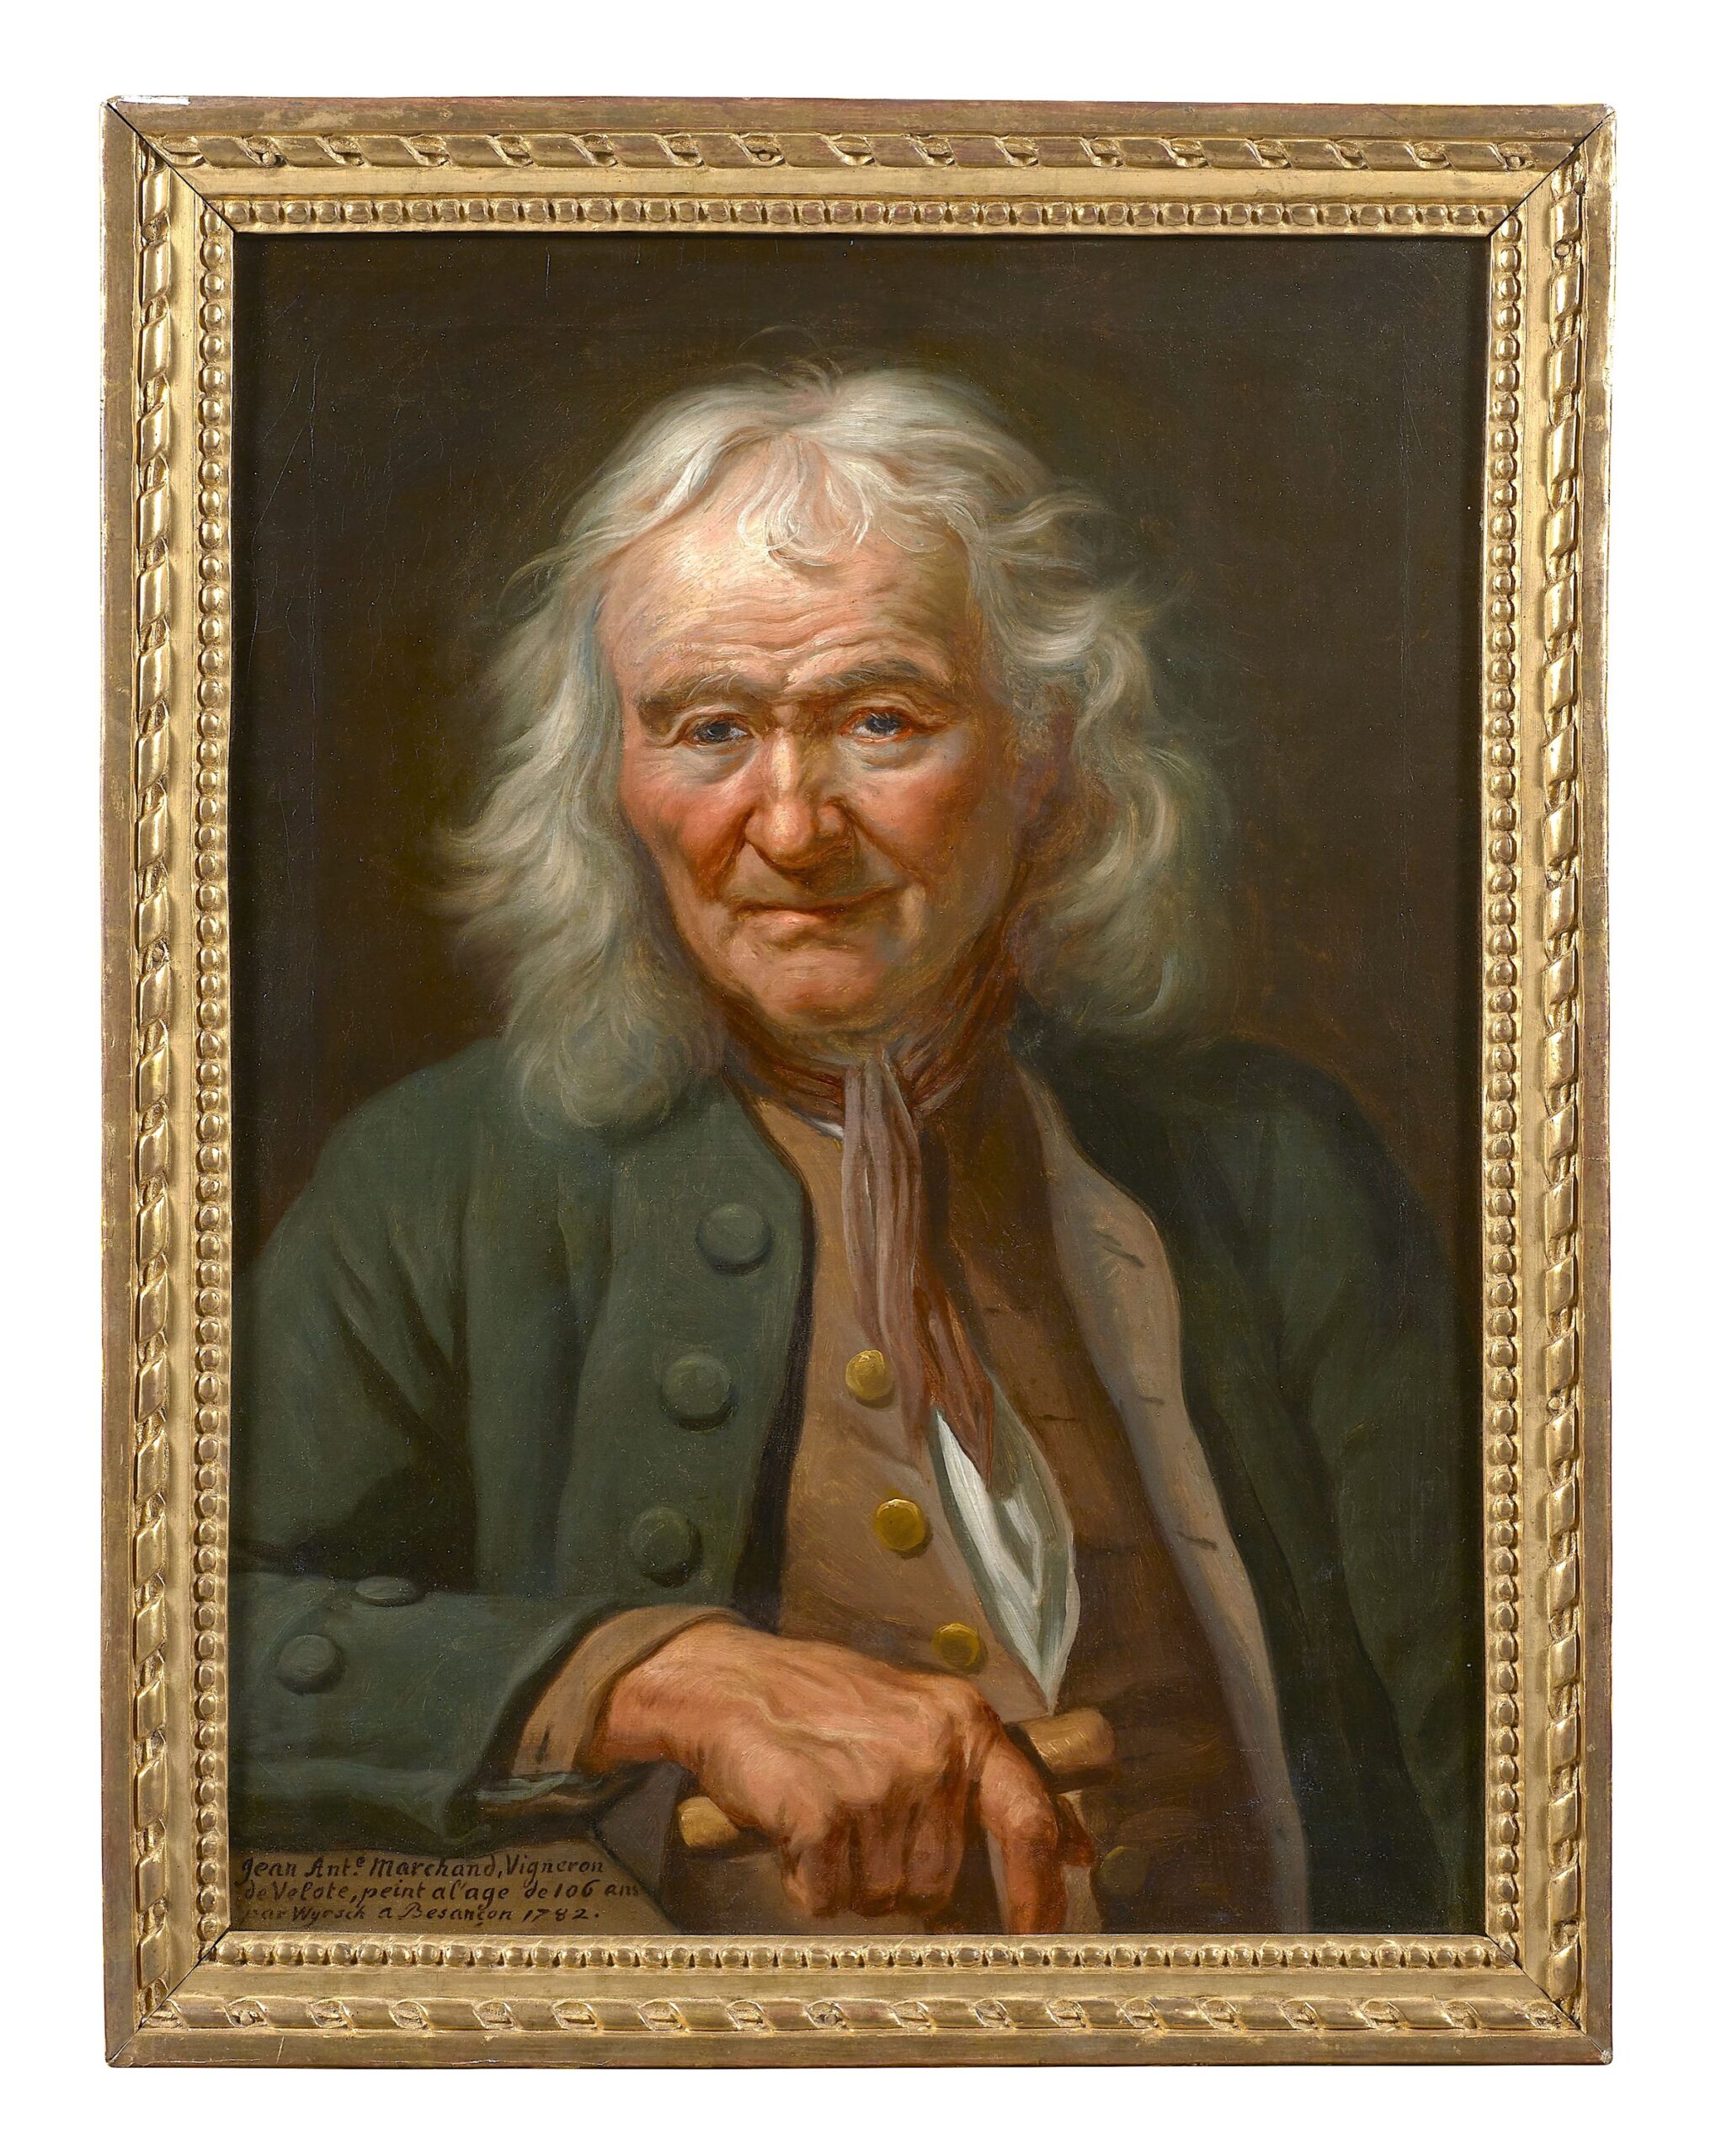 
Le musée dévoile pour sa réouverture ce rare portrait de centenaire figurant le vigneron bisontin Jean Antoine Marchand, peint par Johann Melchior Wyrsch en 1782. © Artcurial